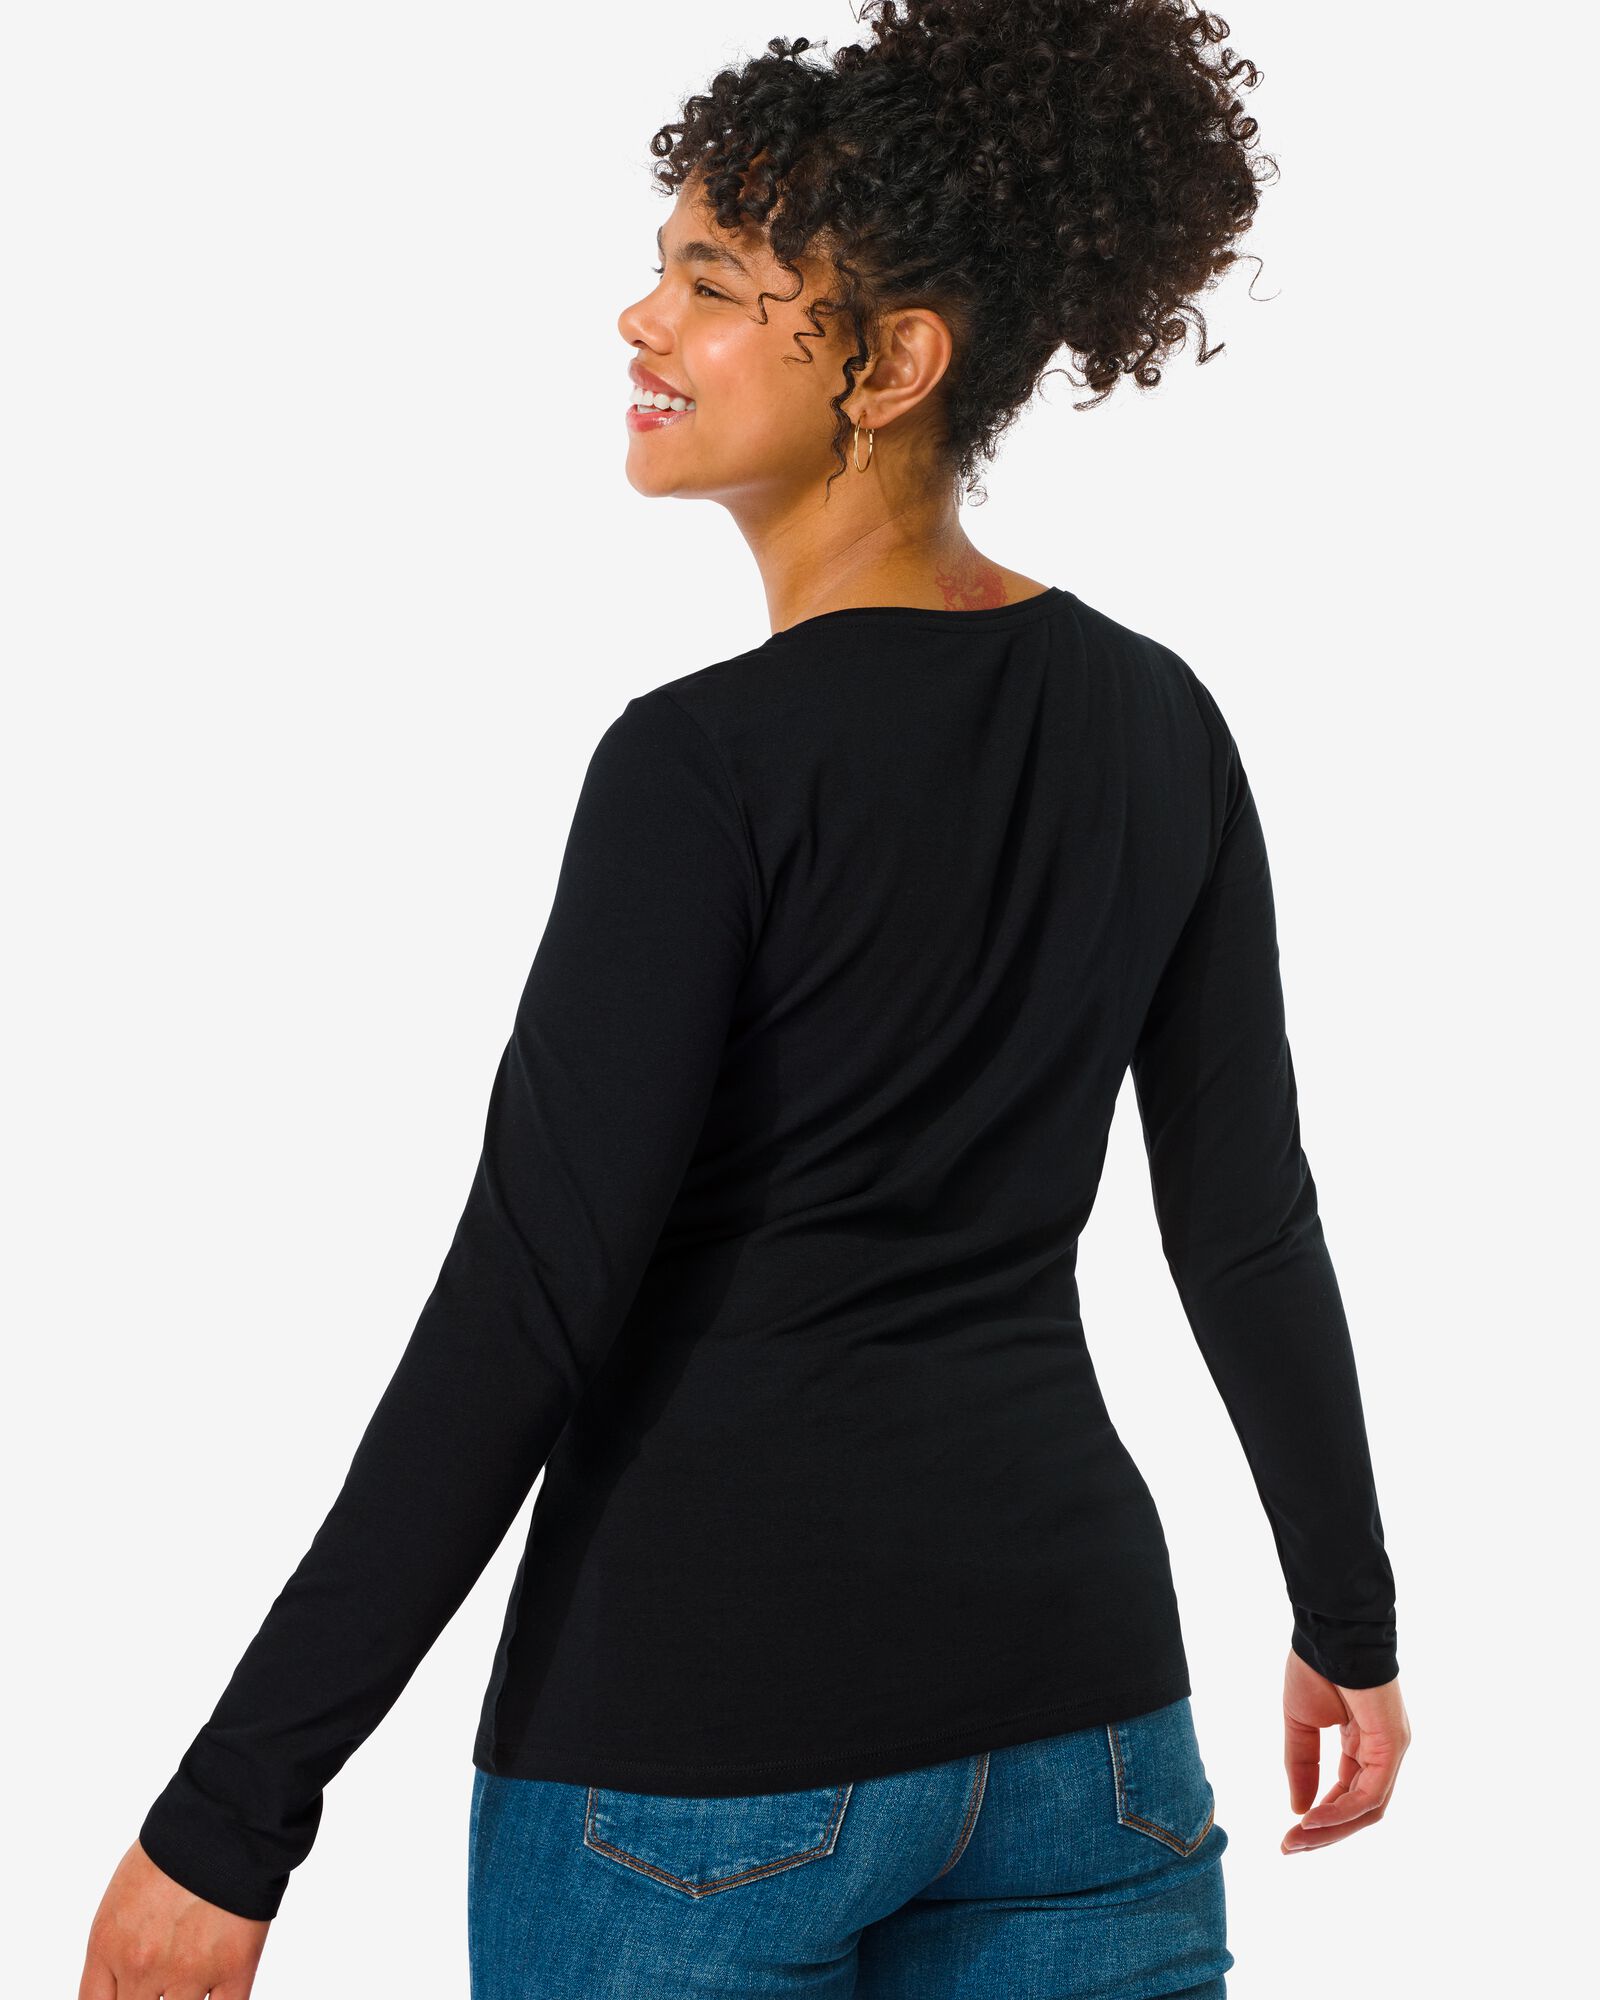 t-shirt femme classique noir noir - 1000005475 - HEMA